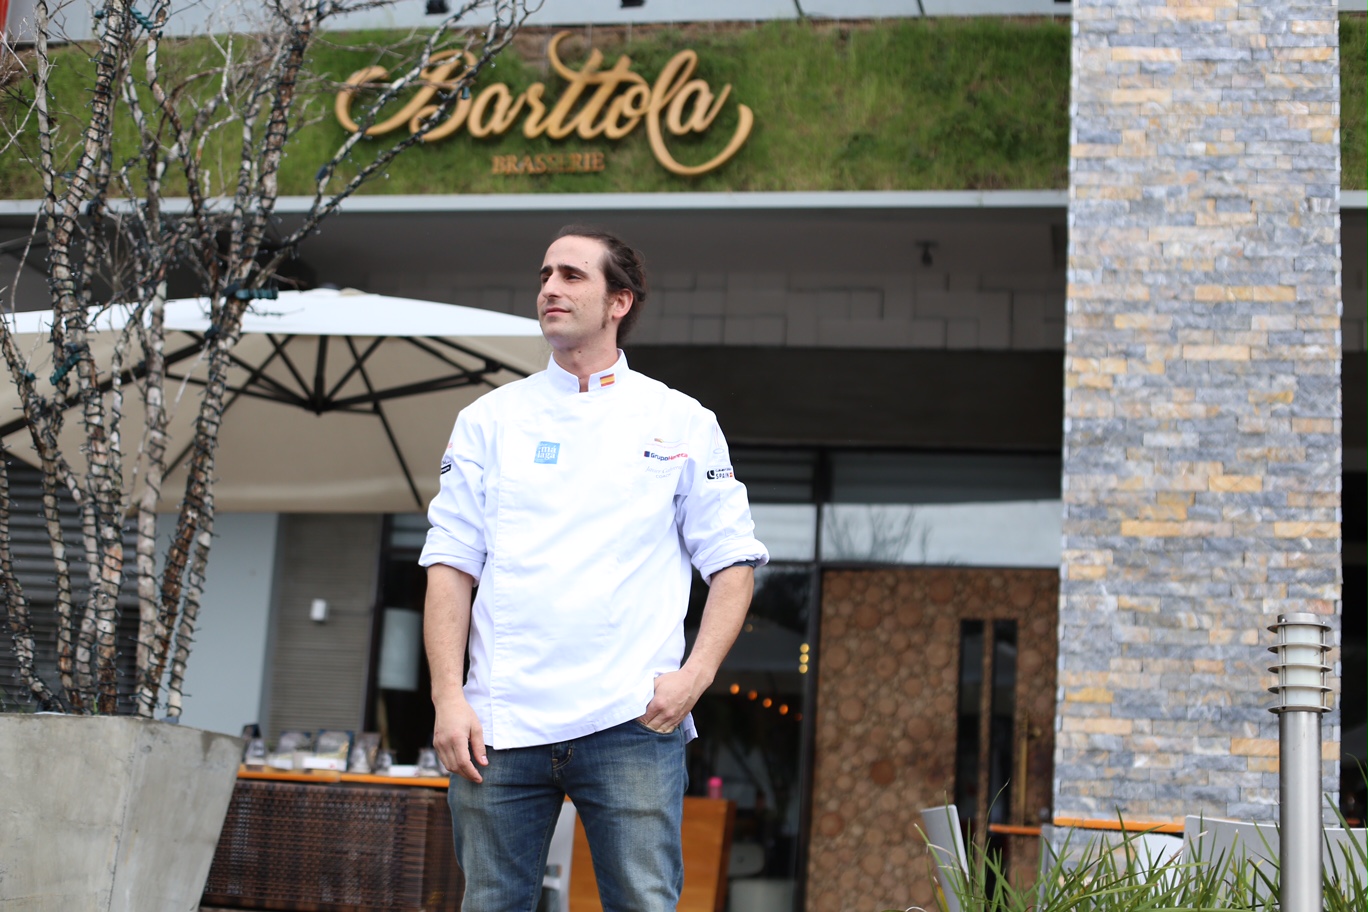 Barttola Brasserie tendrá primer Chef con Estrella Michelin en el país